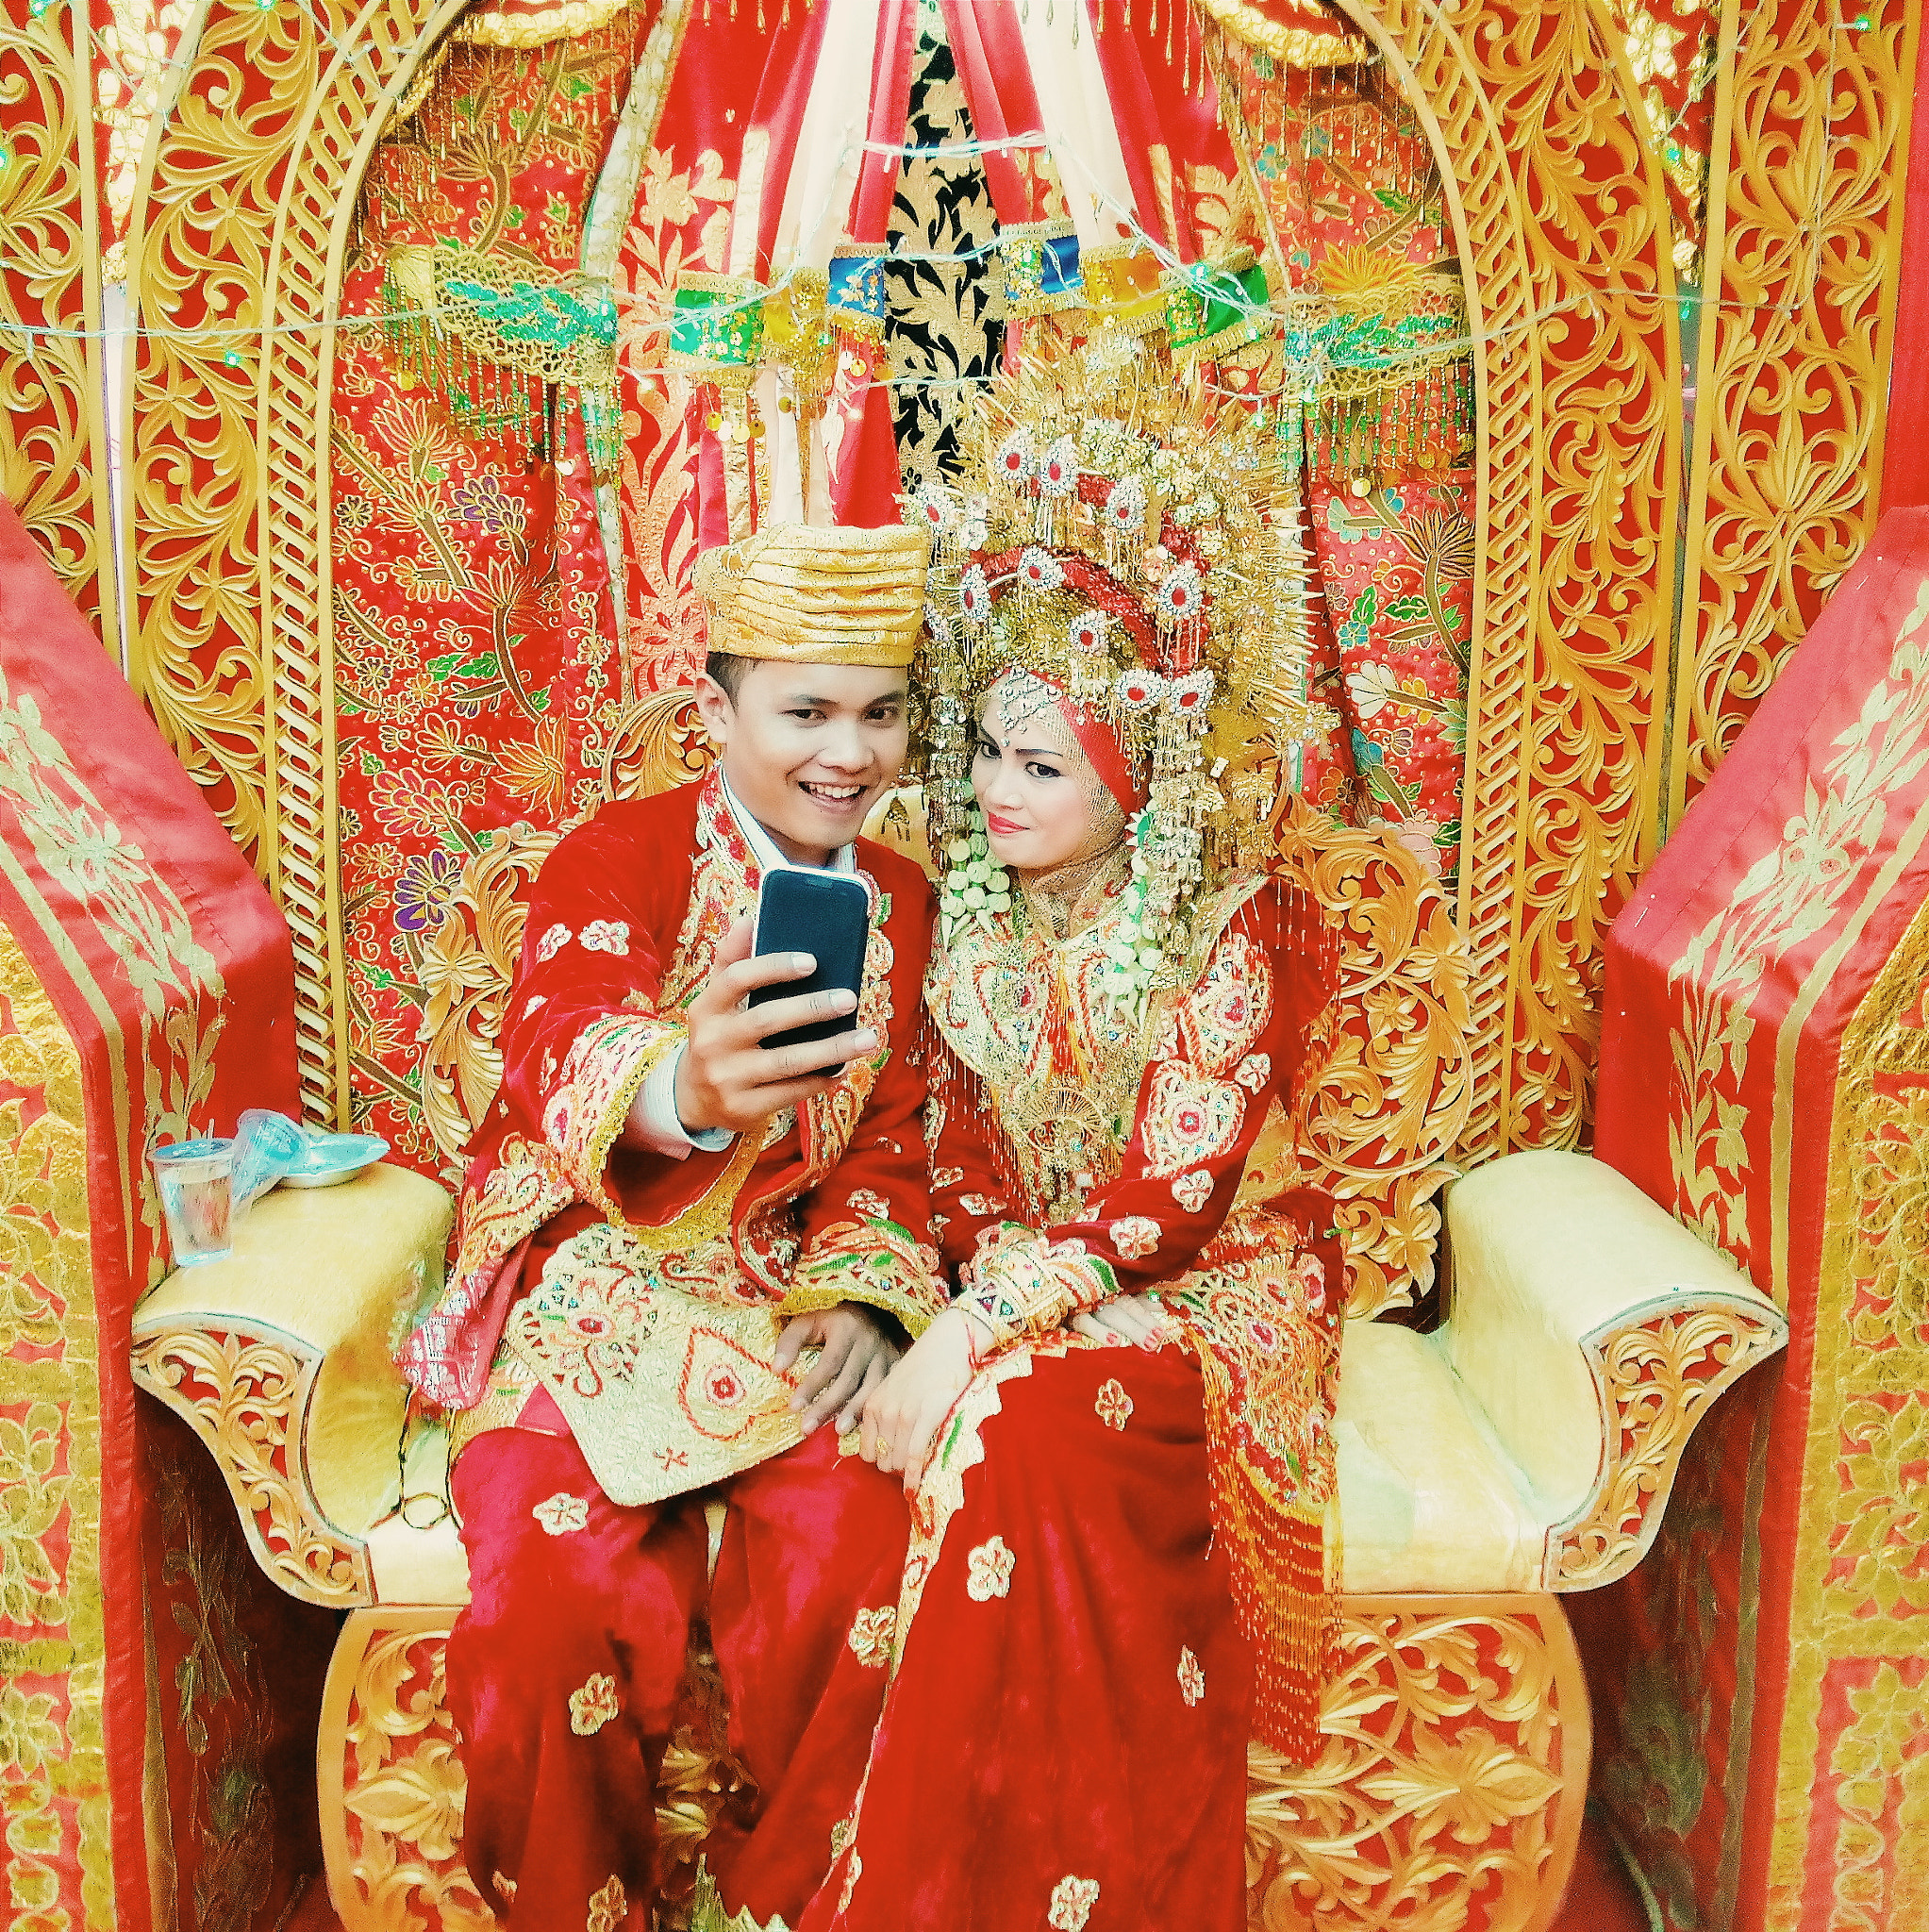 OPPO R827 sample photo. Minangkabau wedding ceremony photography